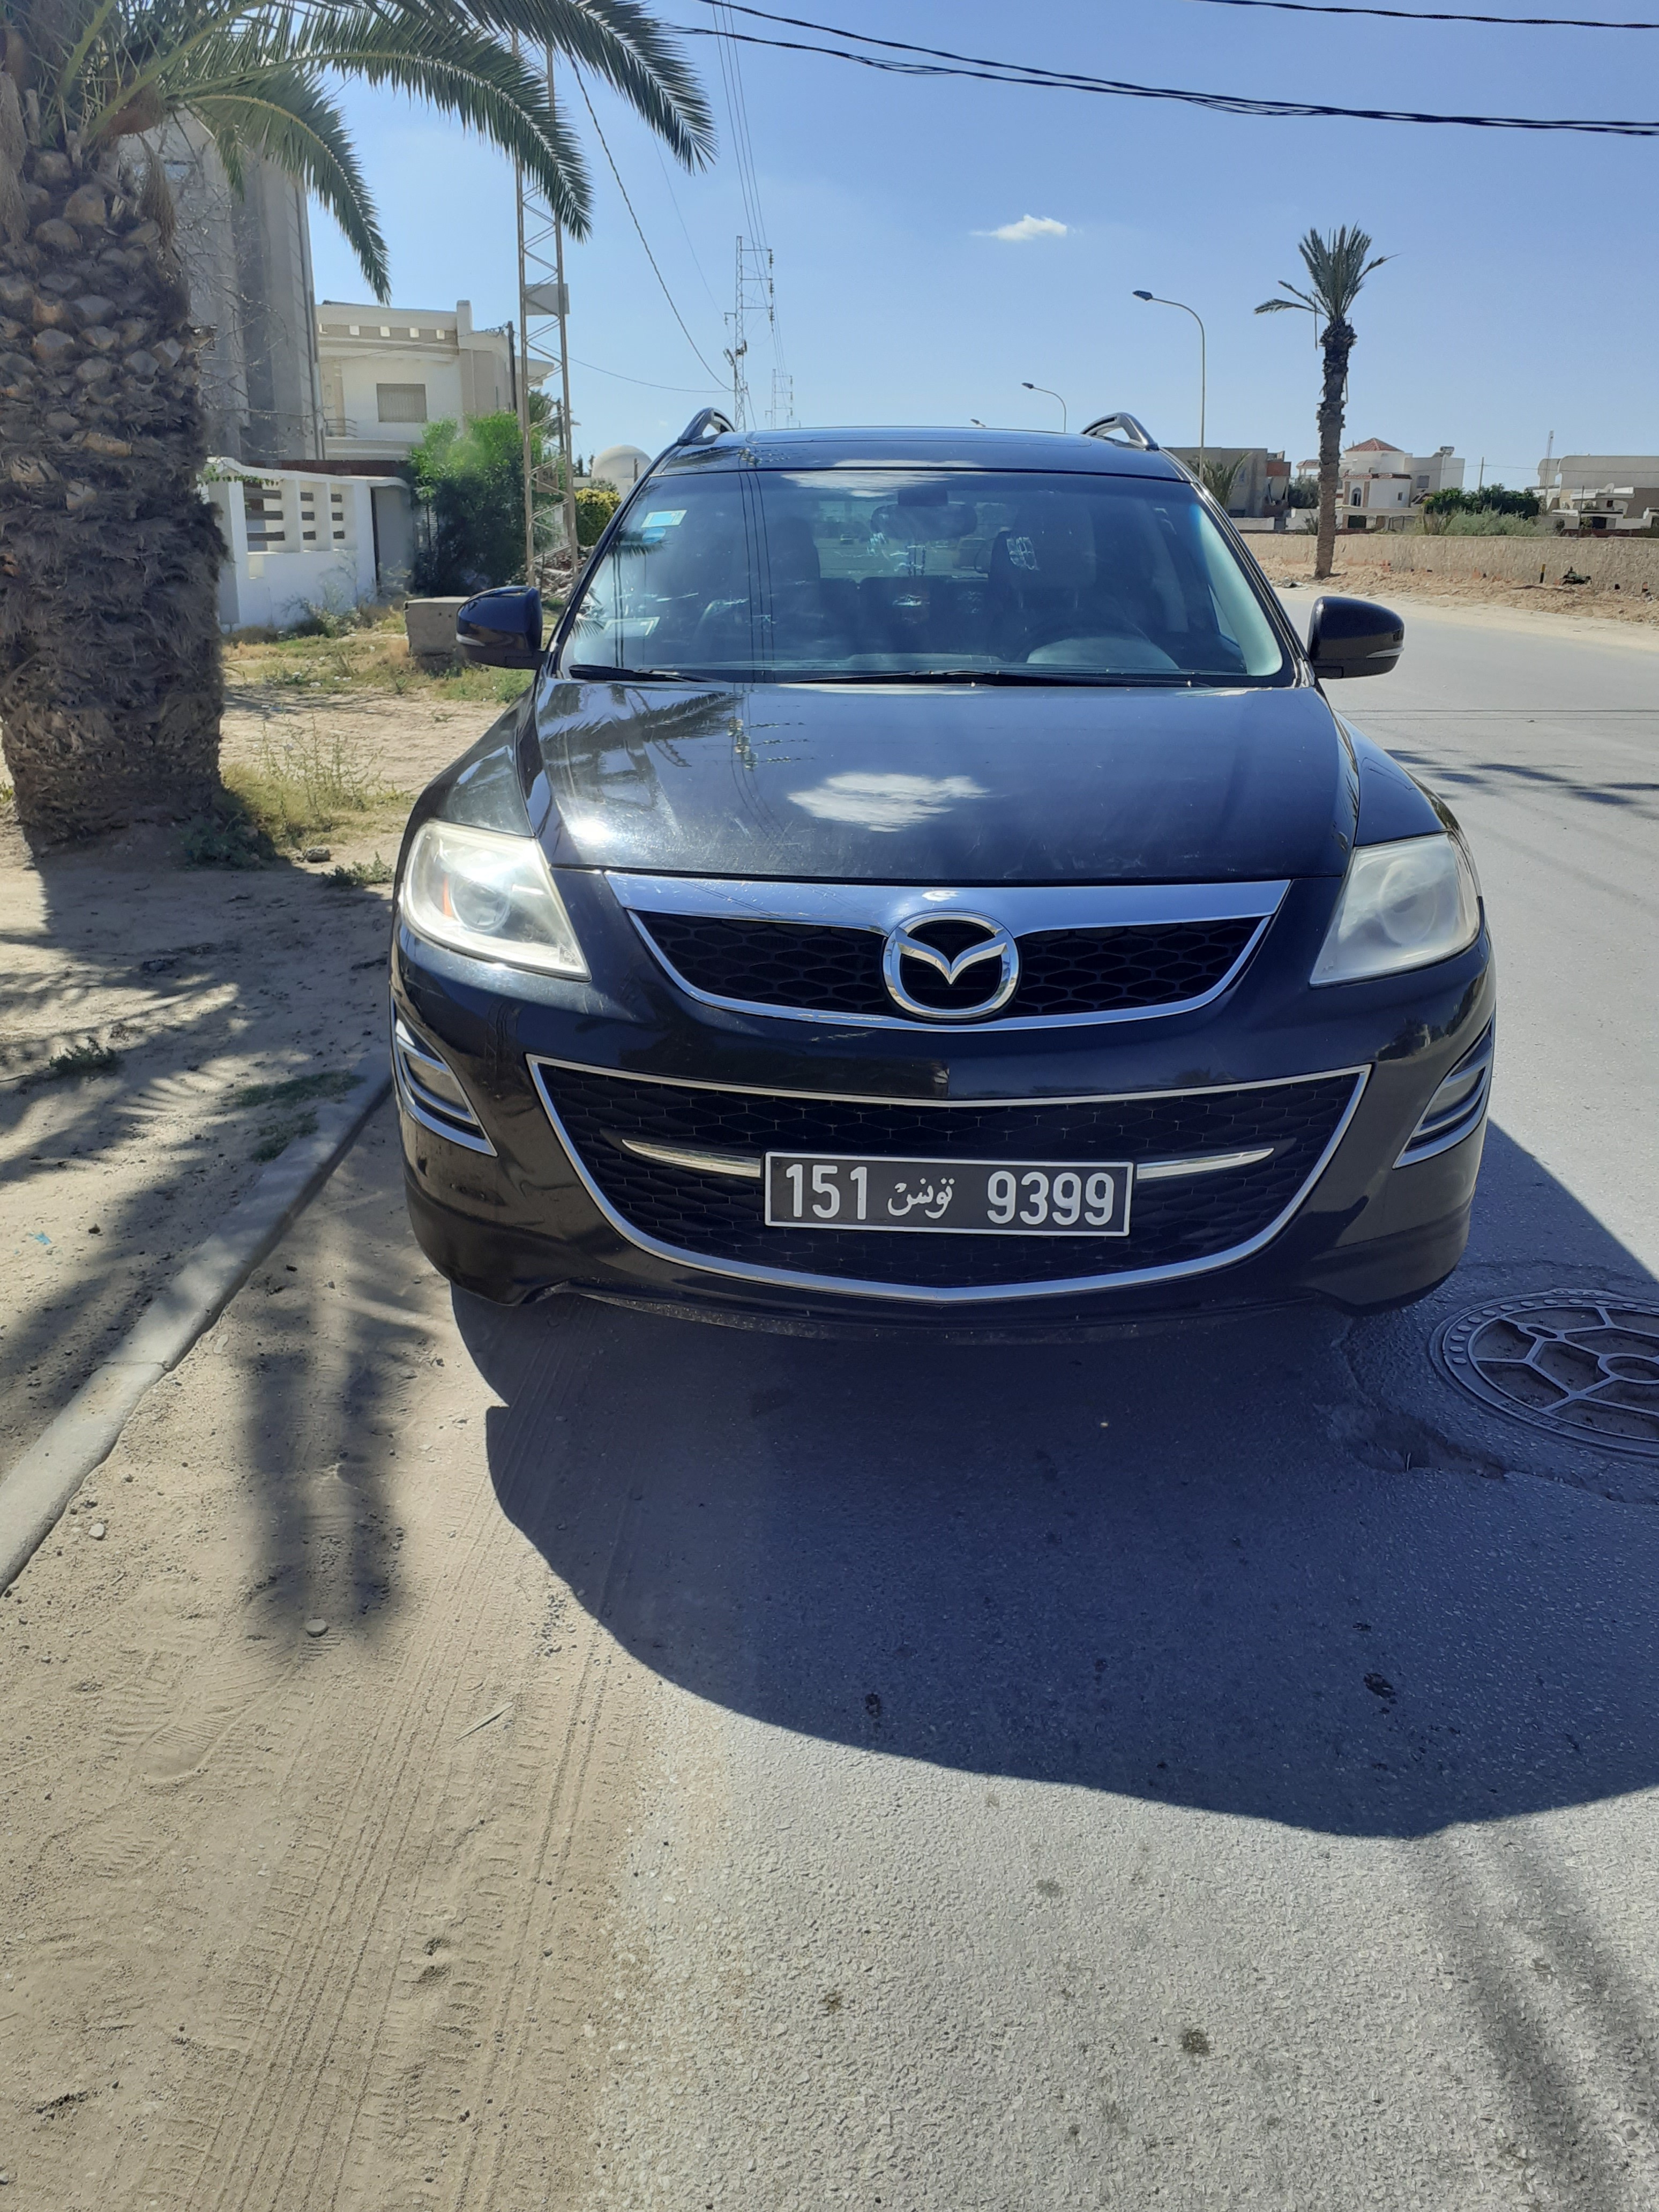 Sfax Ville El Bousten Mazda Autre Modle Voiture mazda cx9